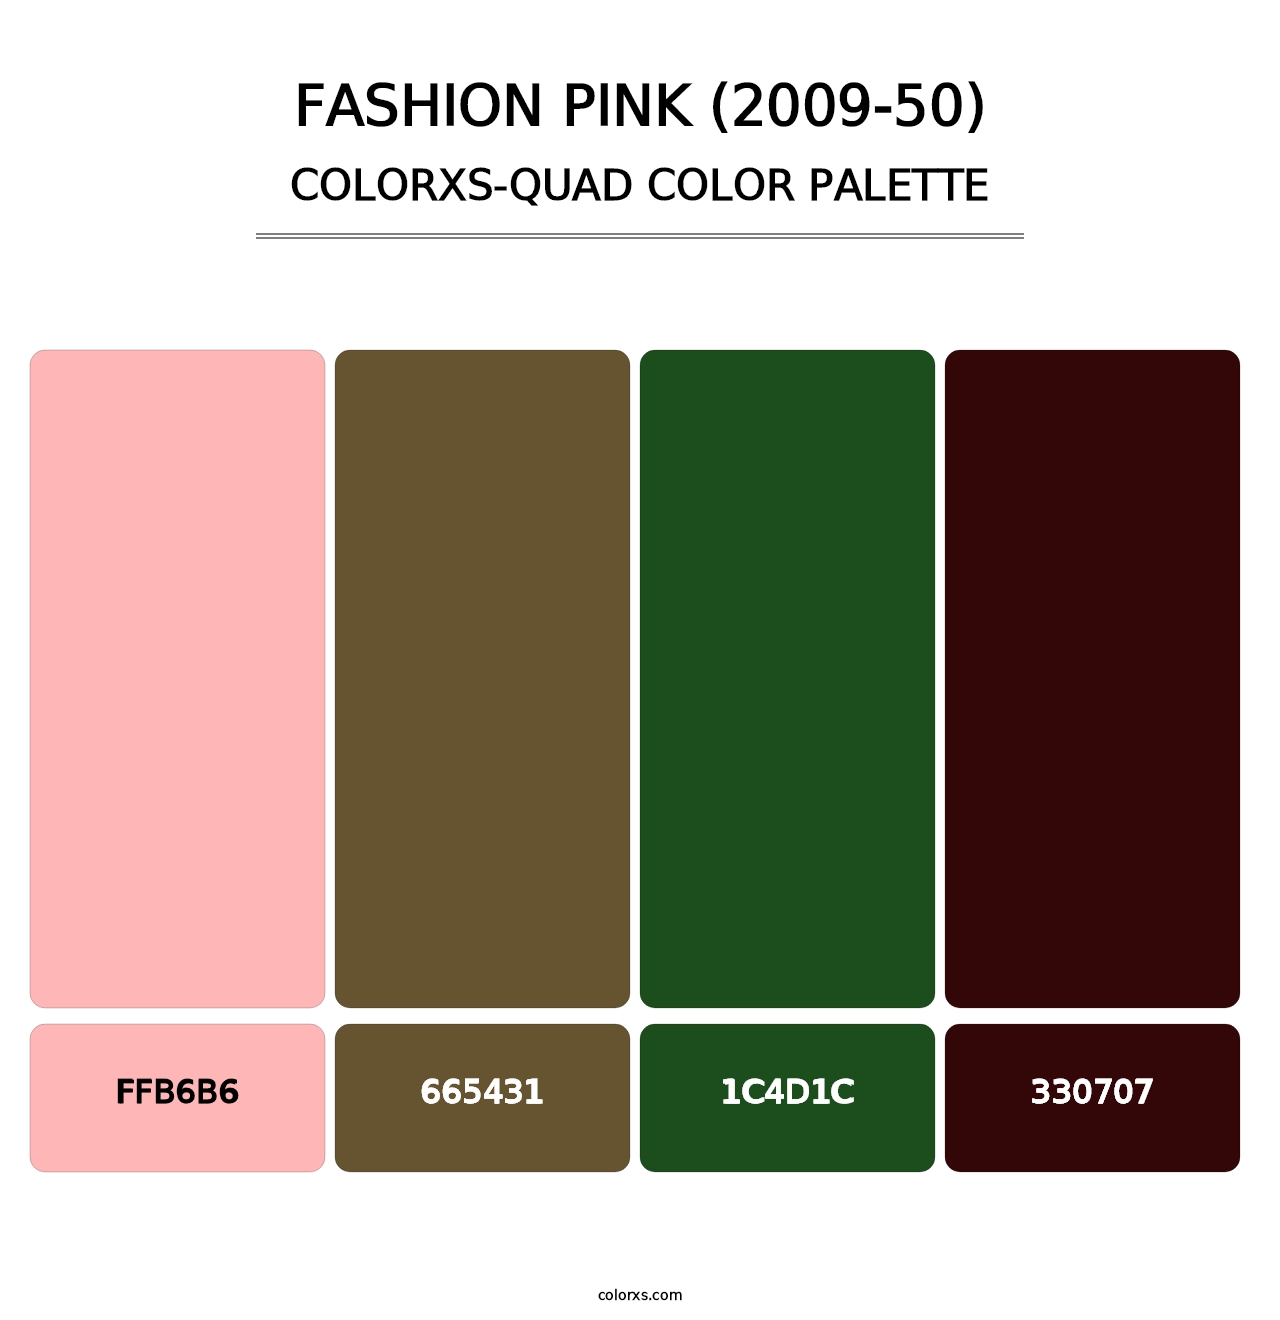 Fashion Pink (2009-50) - Colorxs Quad Palette